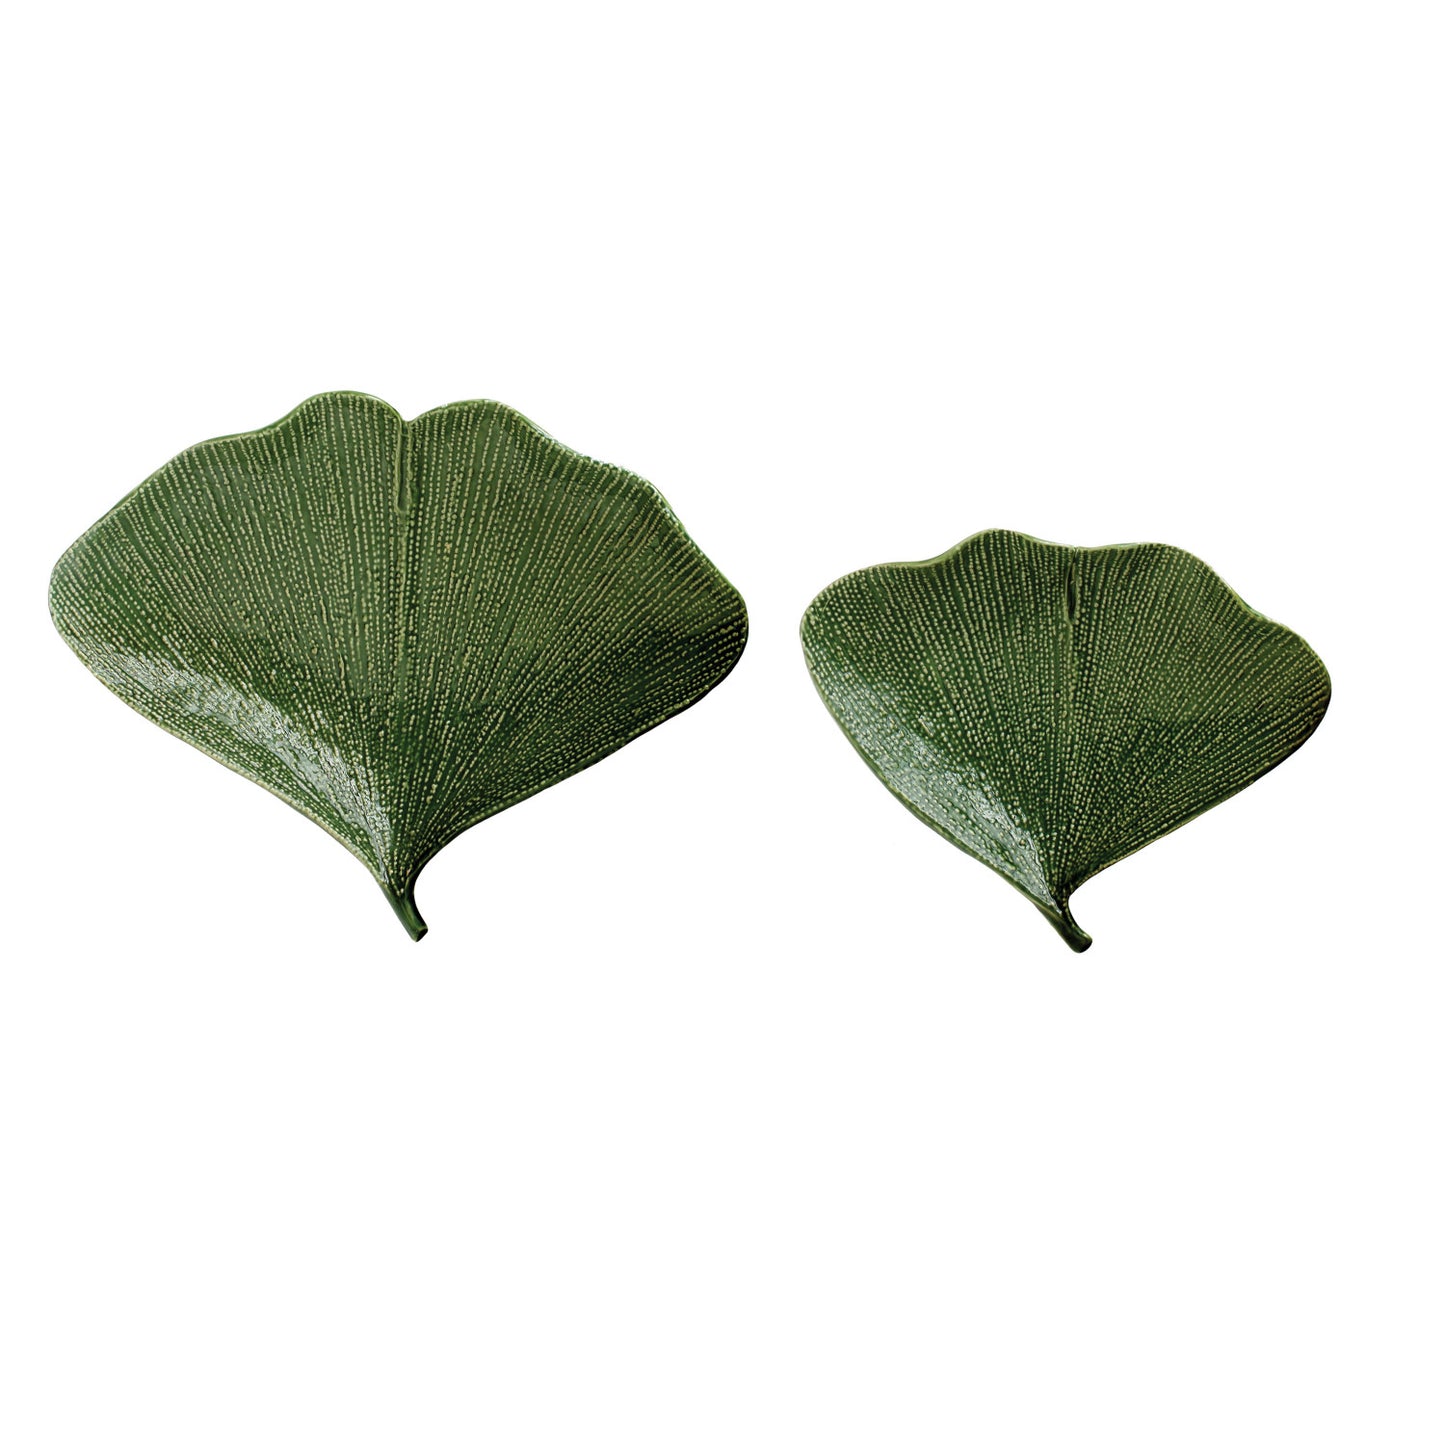 Gingko Leaf Shaped Plate